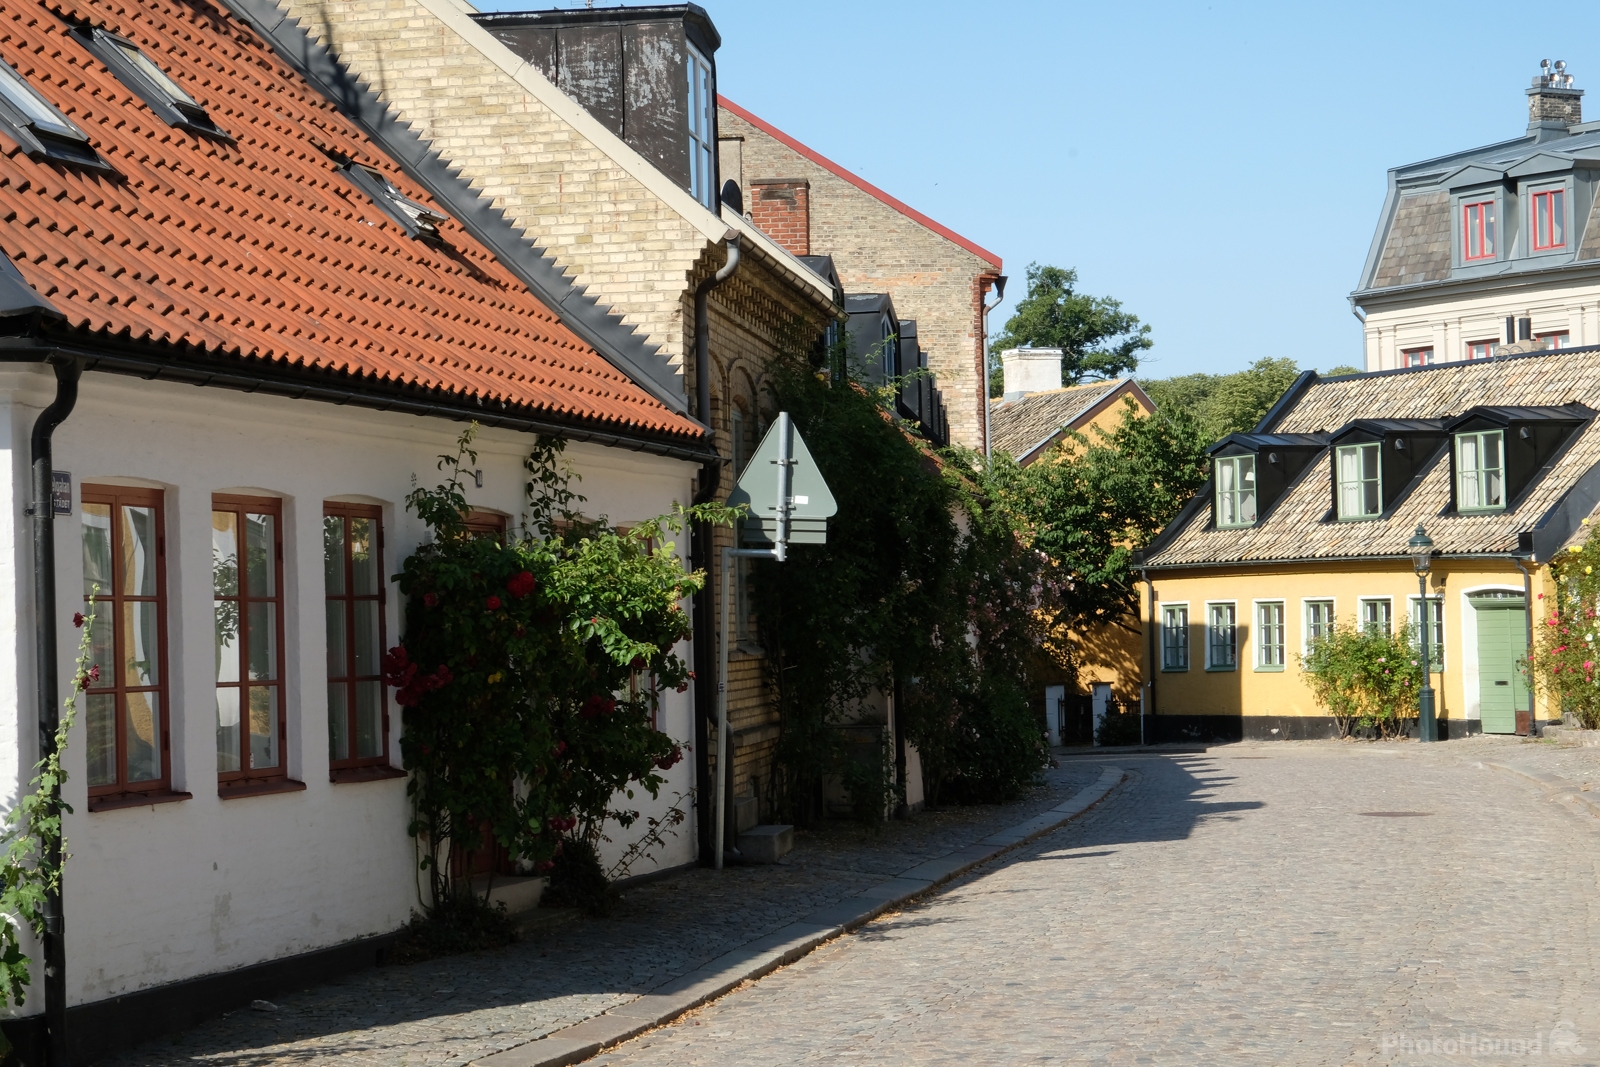 Image of Lund Old Town by Arnie Lund